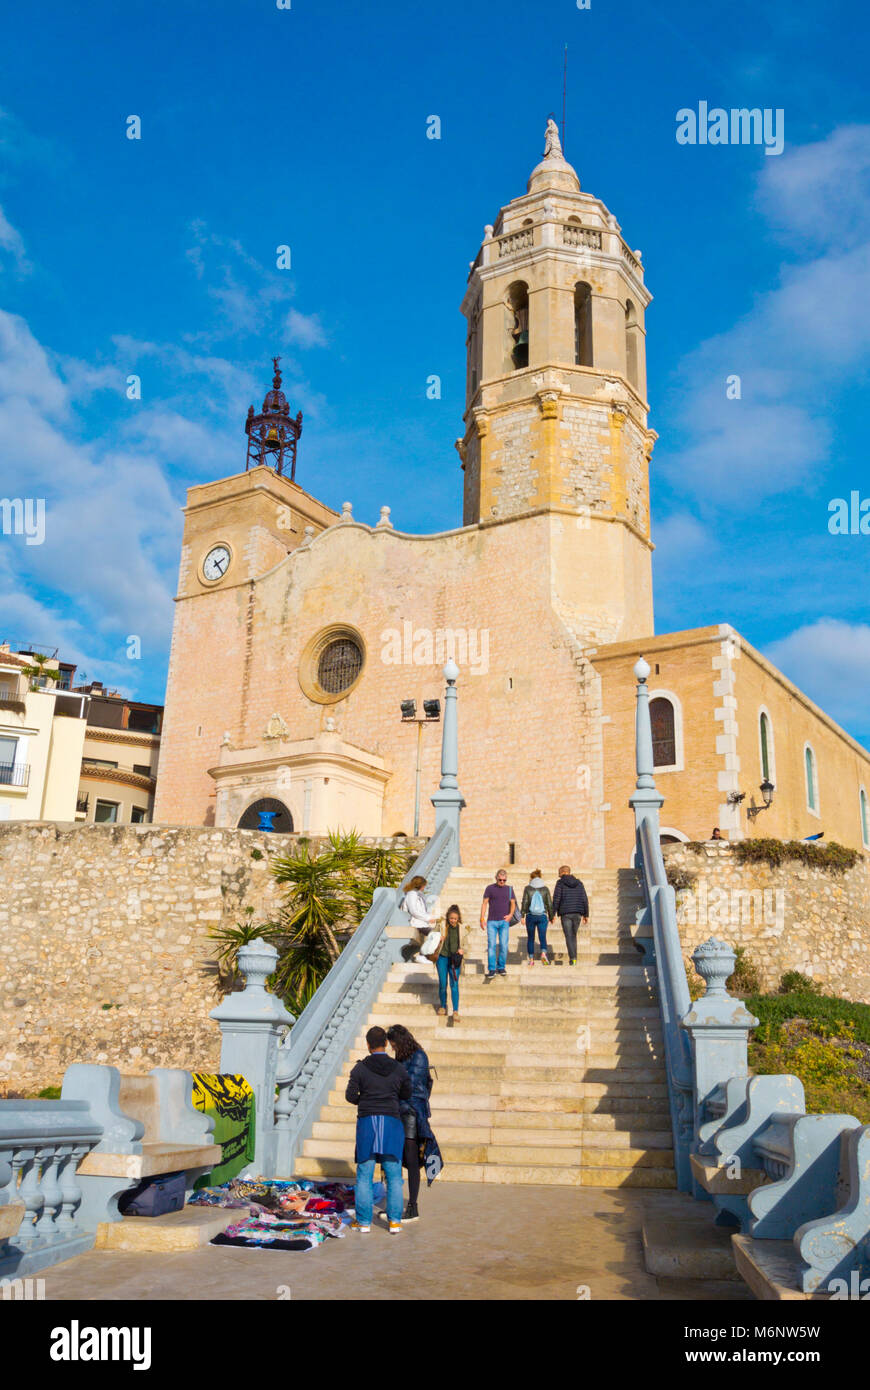 Parroquia de Sant Bartomeu i Santa Tecla, Sitges, Catalonia, Spain Stock Photo